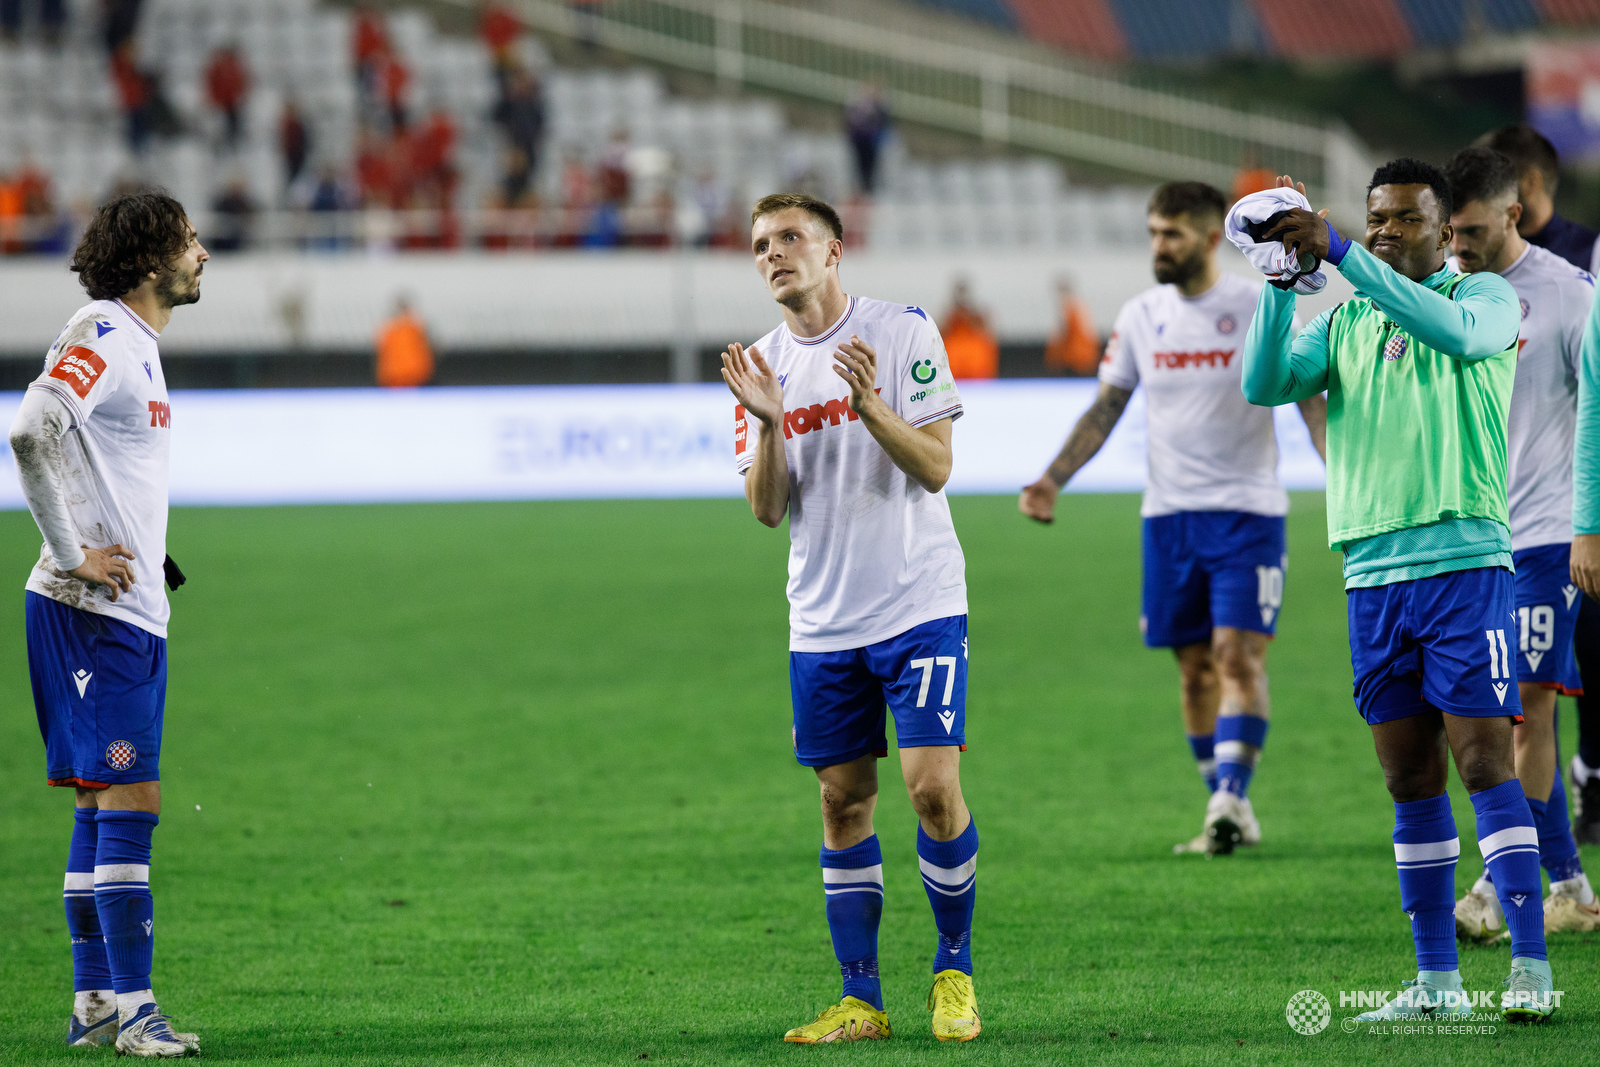 NK Varaždin 0-3 HNK Hajduk Split :: Resumenes :: Vídeos